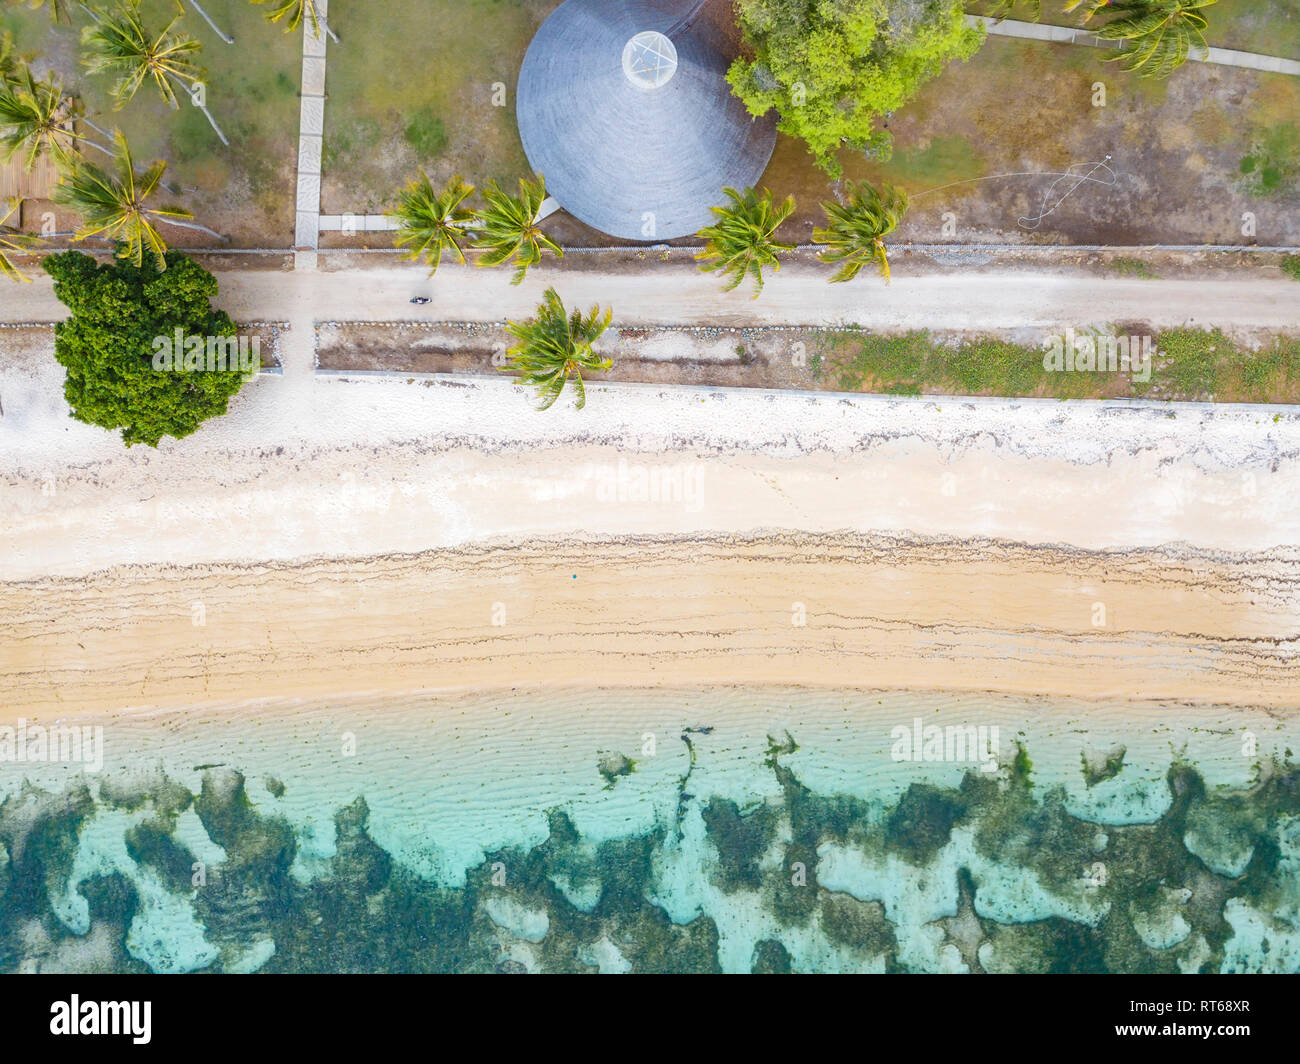 Indonesia, West Sumbawa, vista aerea di Kertasari, la spiaggia e il rifugio dal di sopra Foto Stock